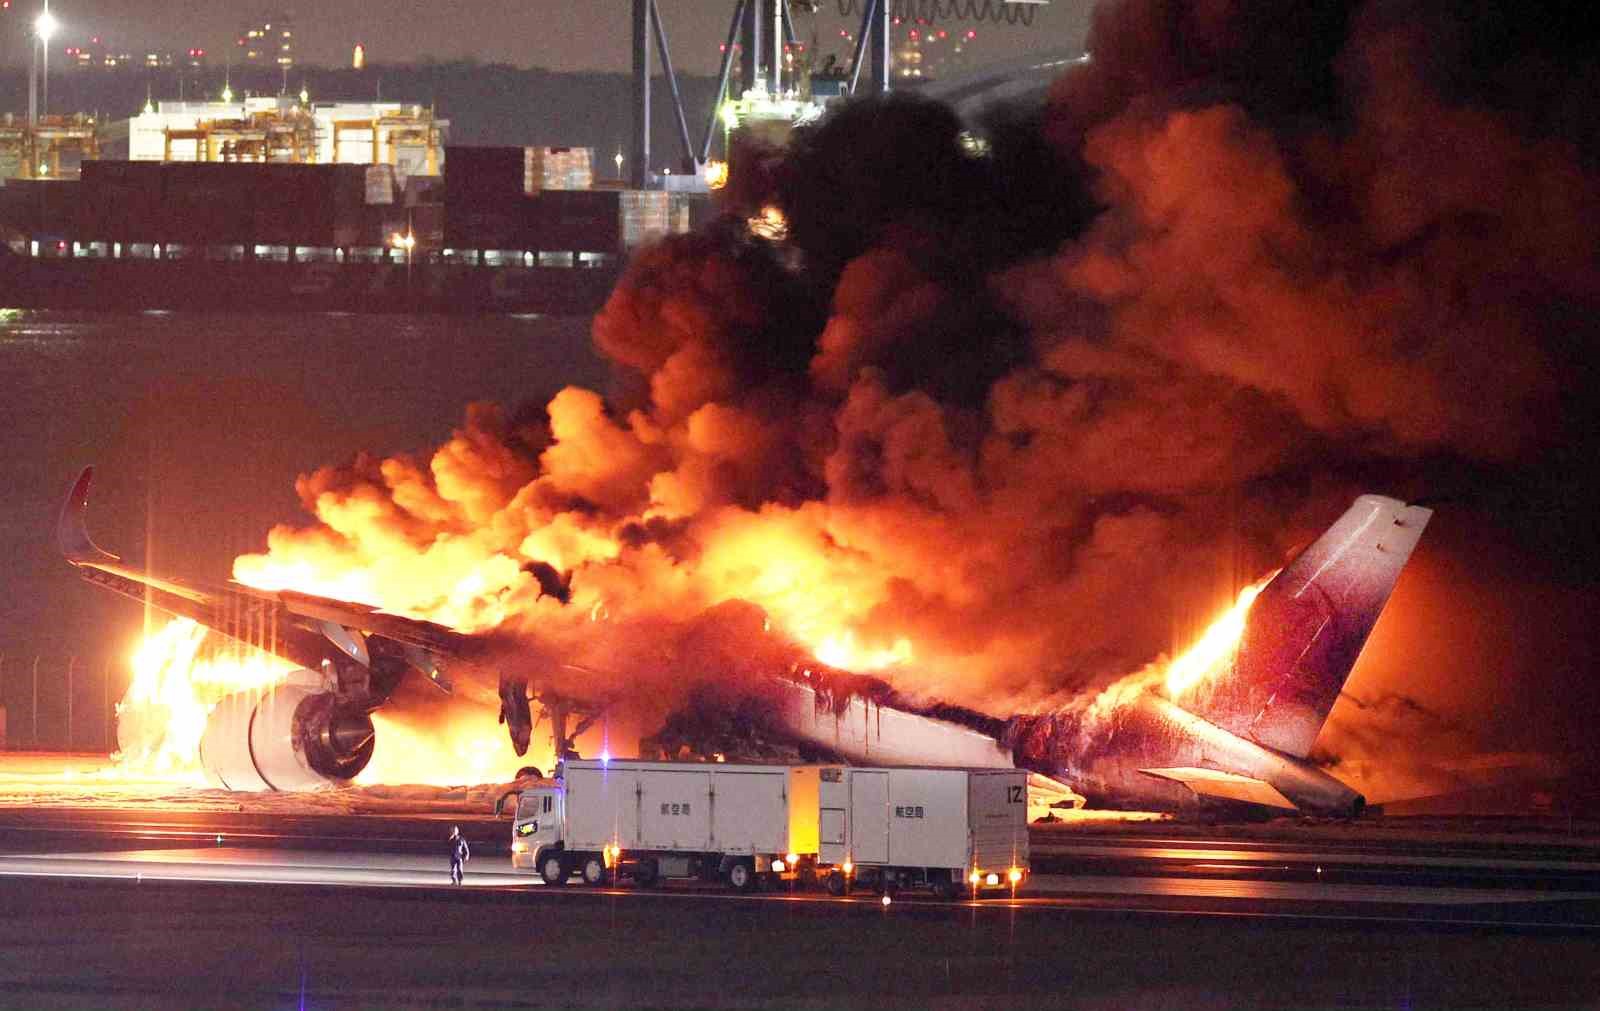 Tokyo’da yolcu uçağıyla çarpışan sahil güvenlik uçağındaki 5 kişi öldü, pilot ağır yaralandı